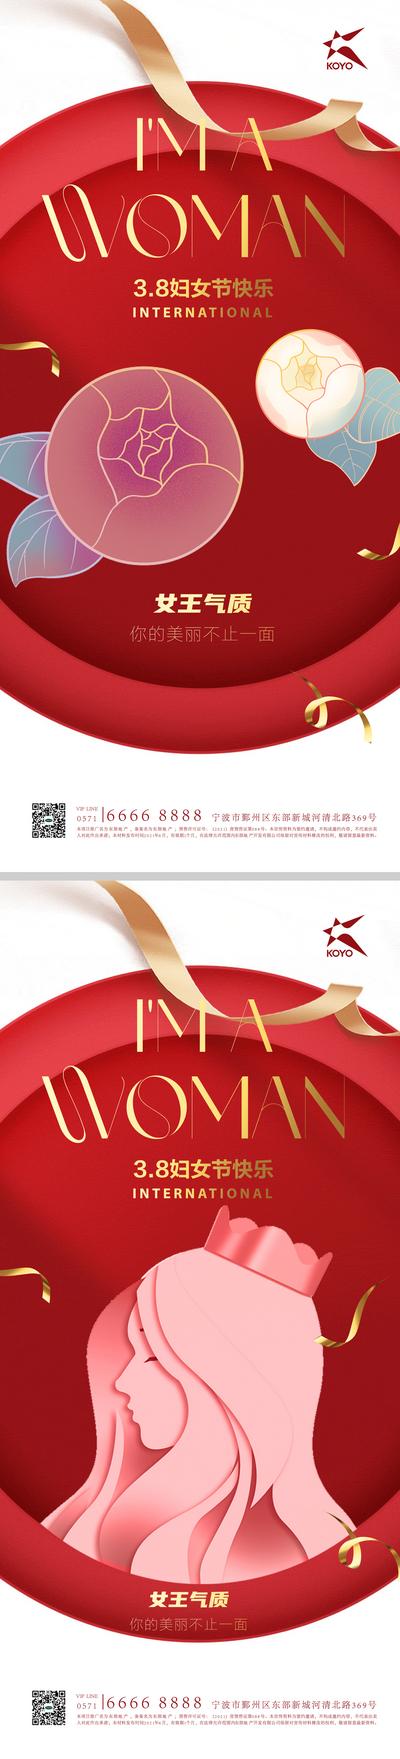 【南门网】海报 公历节日 女王节 妇女节 丝带 创意 系列